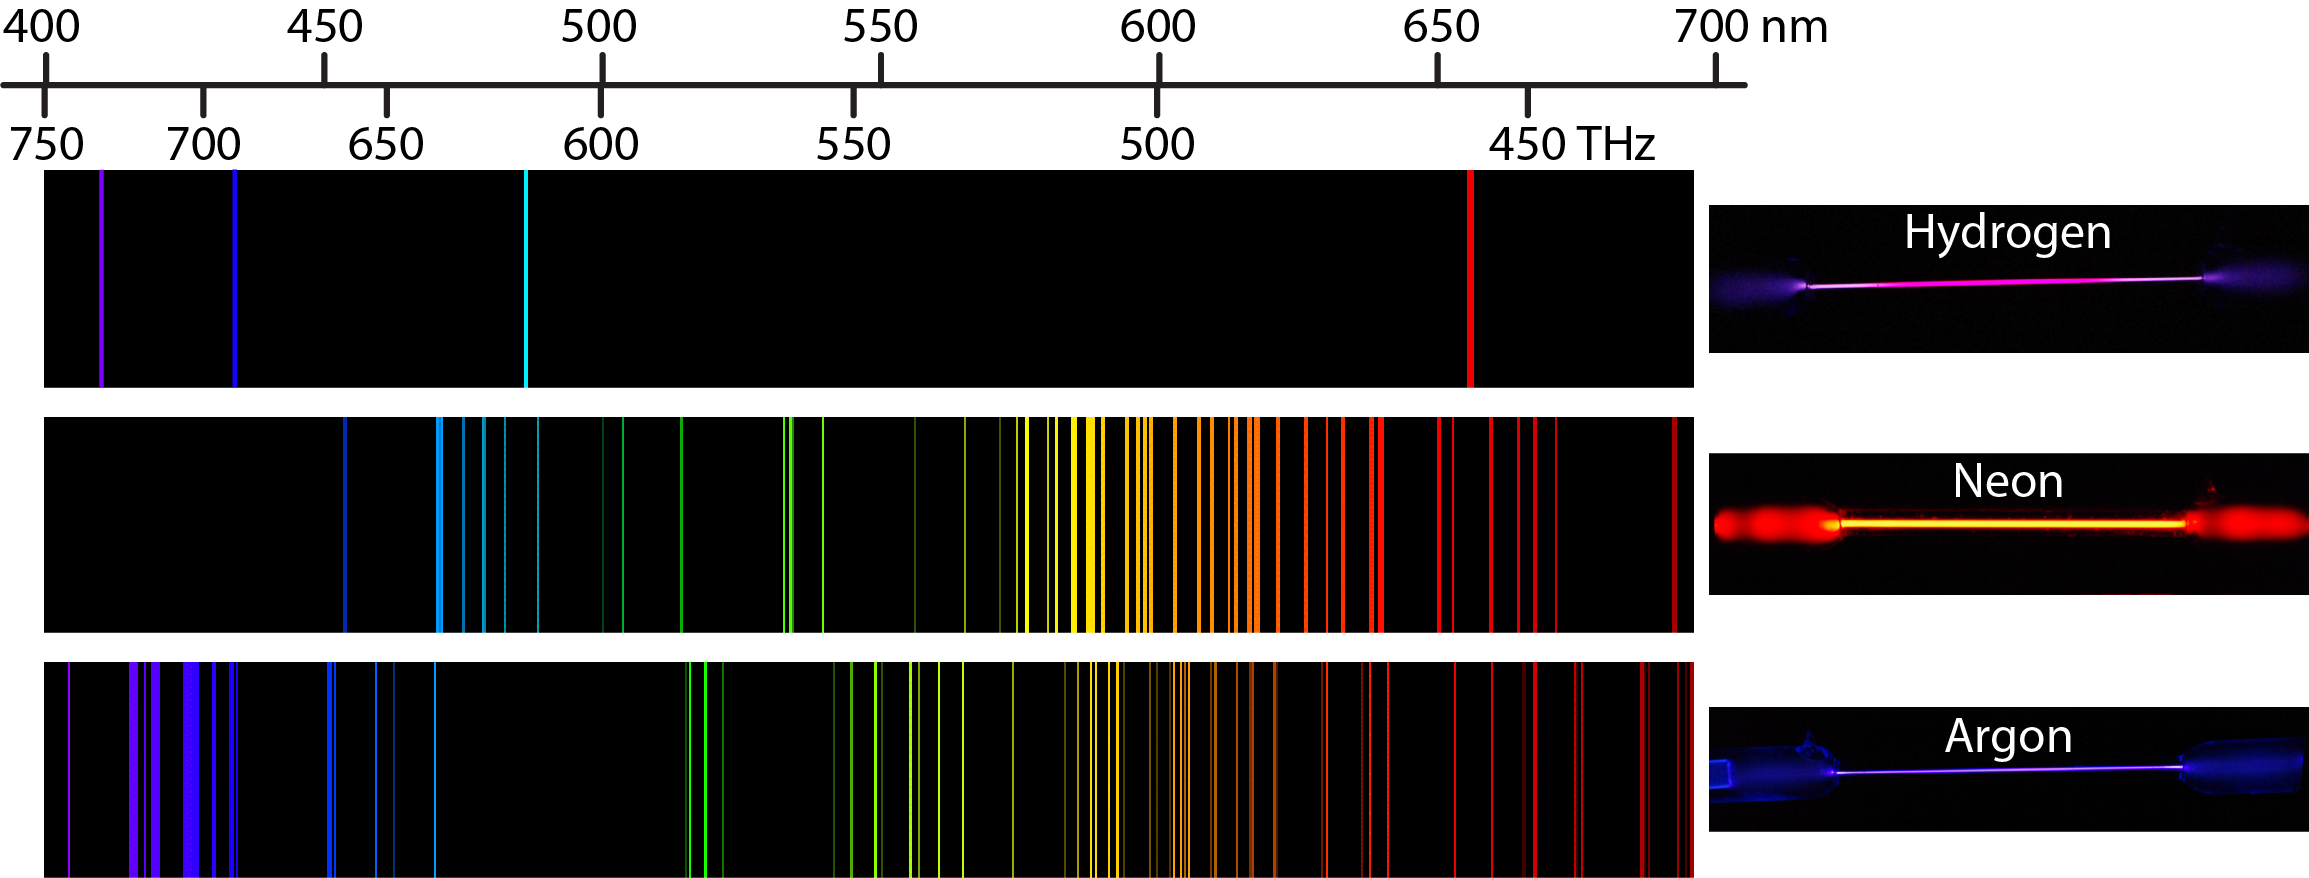 argon atomic emission spectrum